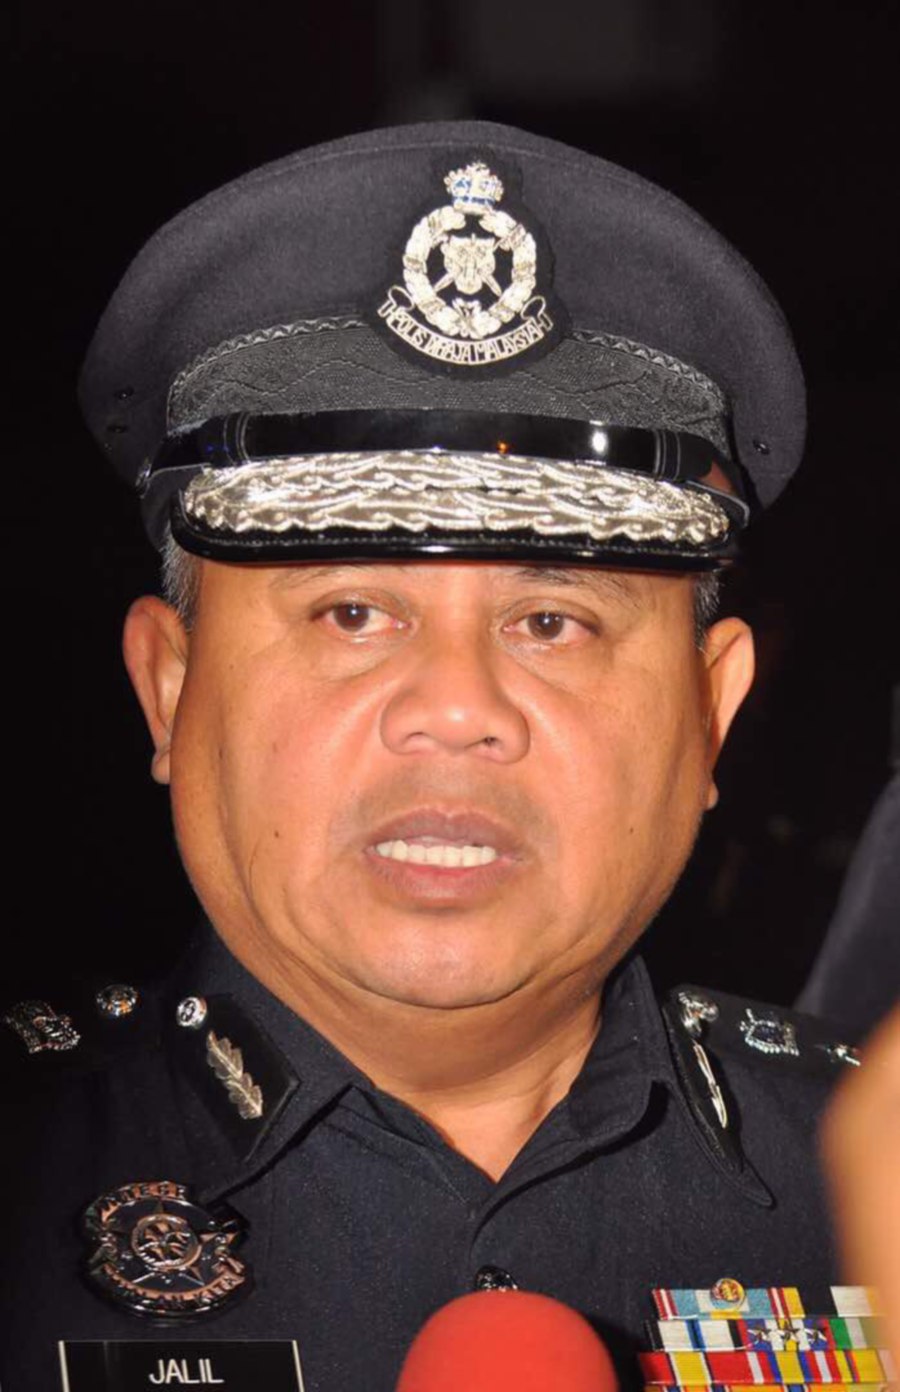 No Raya leave for majority of Melaka policemen | New ...